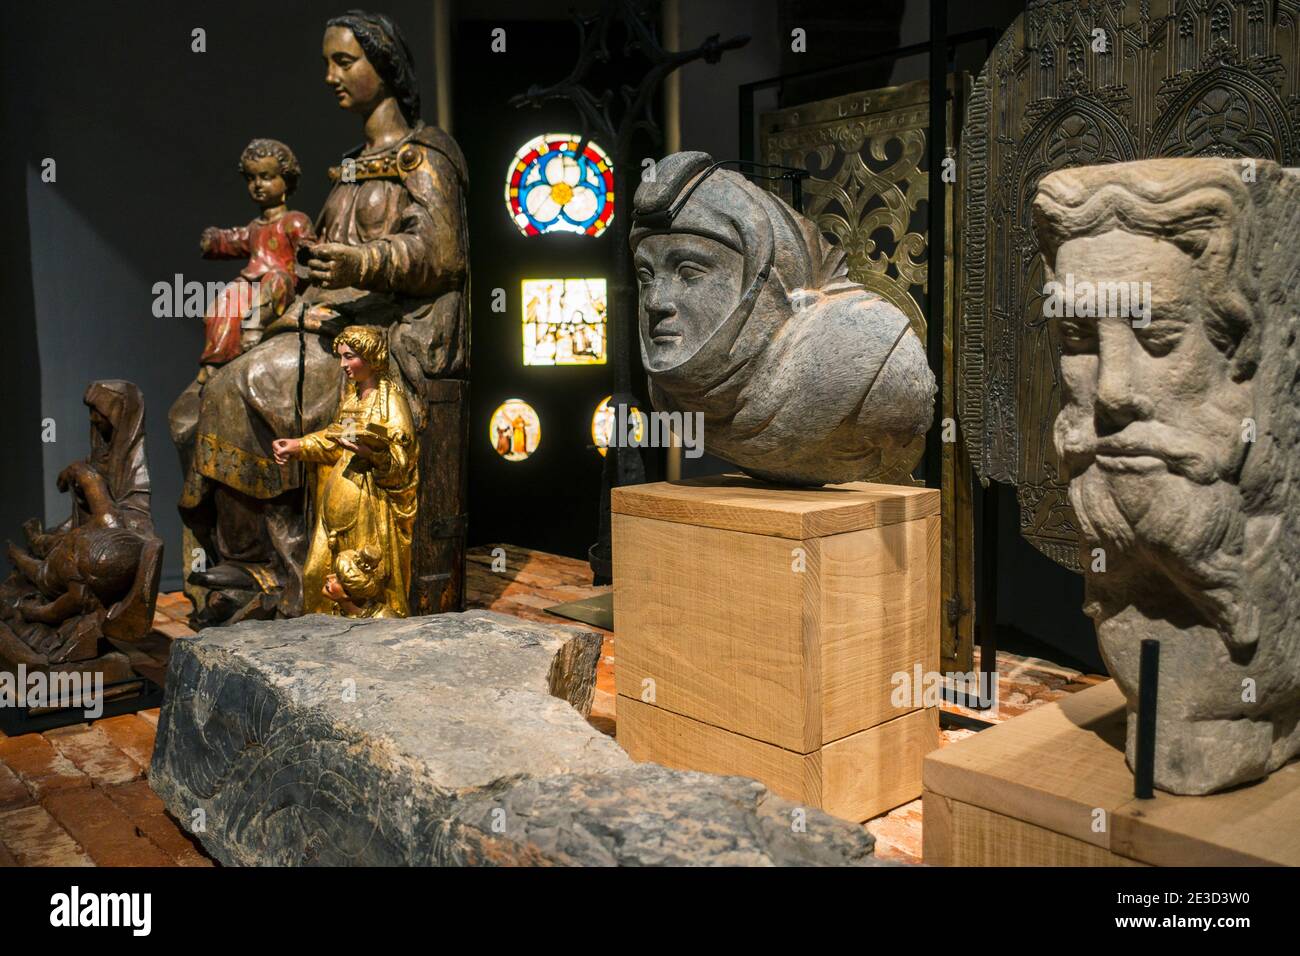 Art religieux médiéval, statues et sculptures au STAM, Musée de la ville de Gand / Stadsmuseum Gent, Flandre orientale, Belgique Banque D'Images